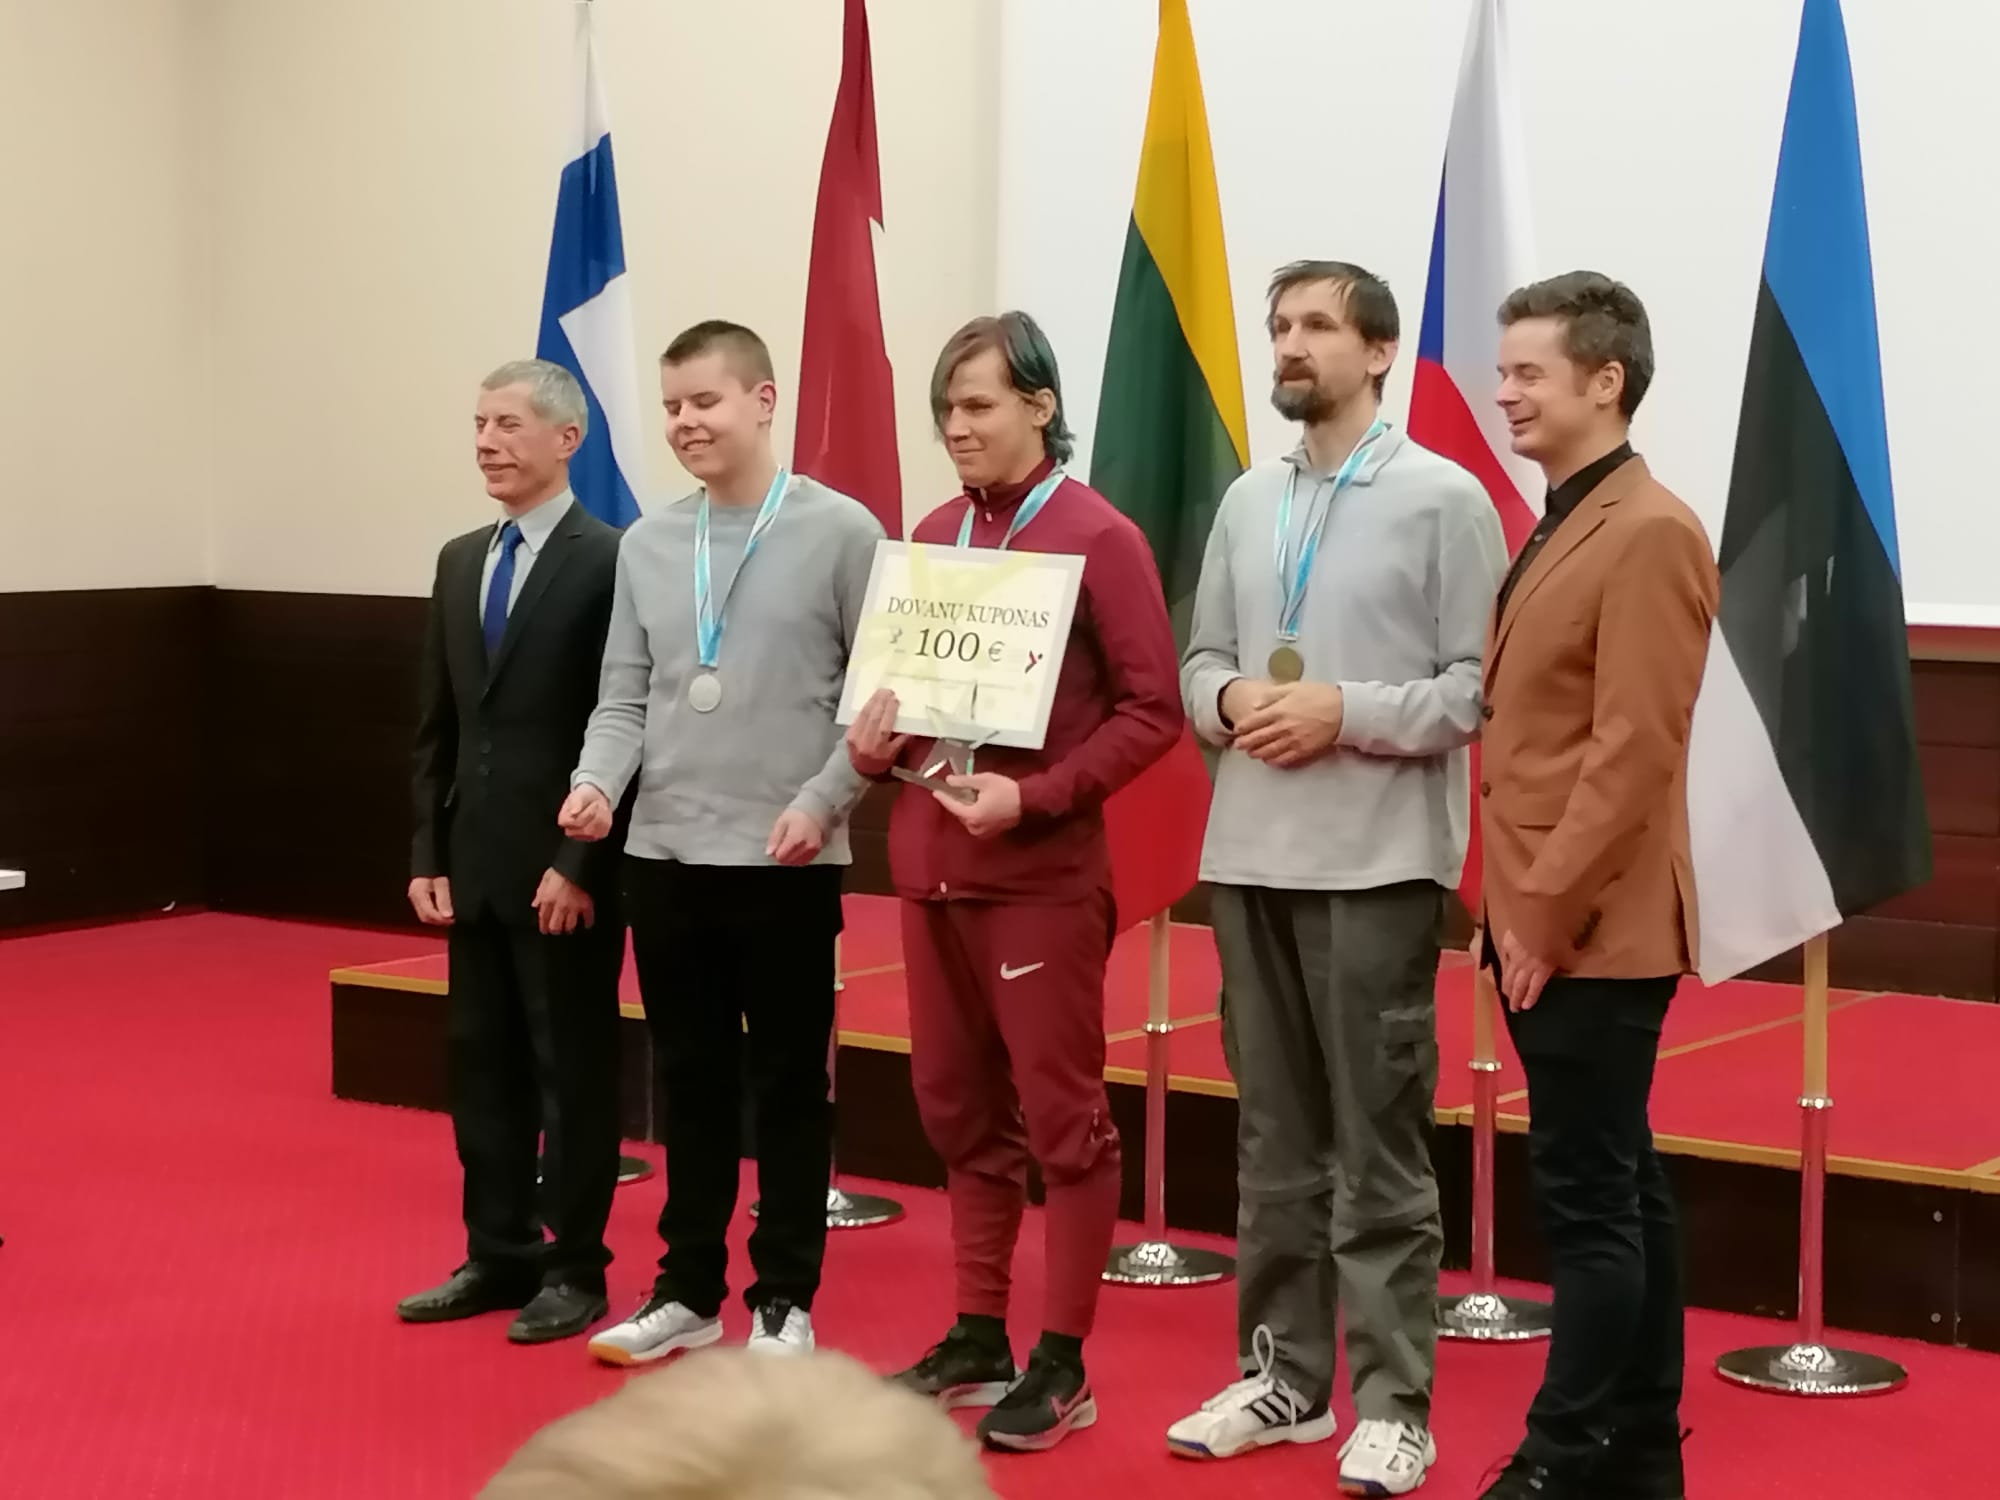 Čeští showdownisté na Zlaté pálce v Litvě!